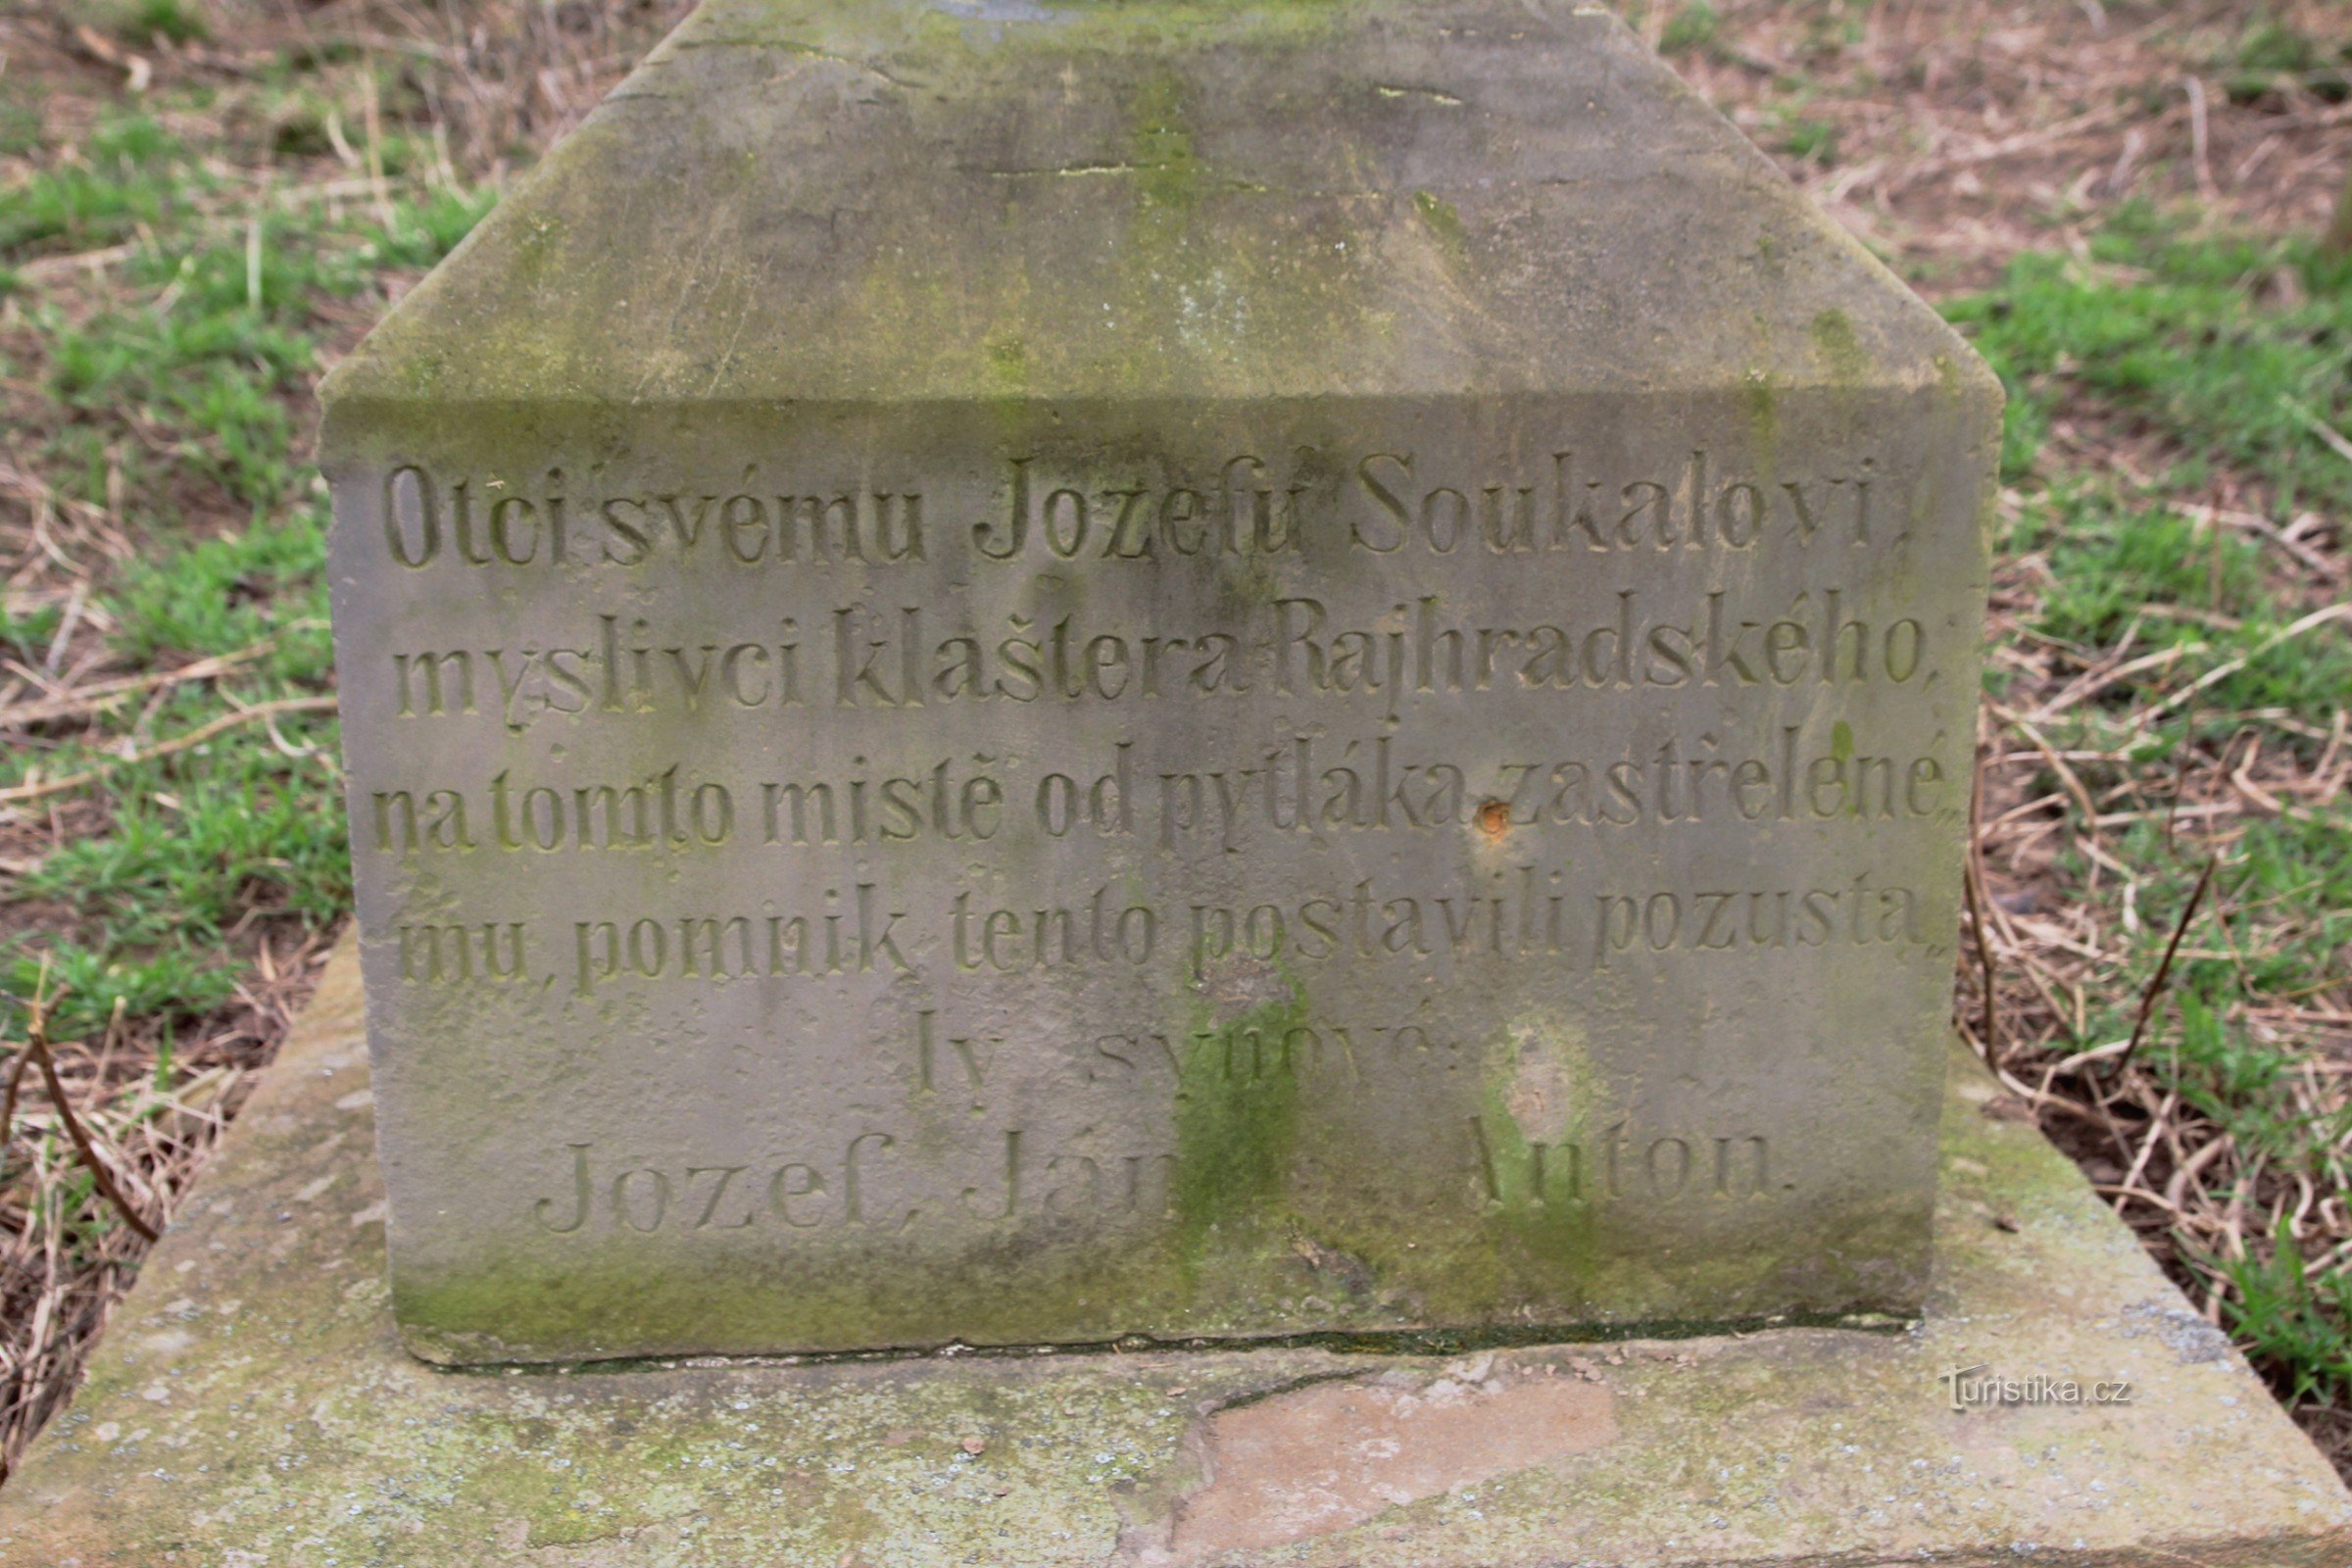 Detajl napisa na spomeniku